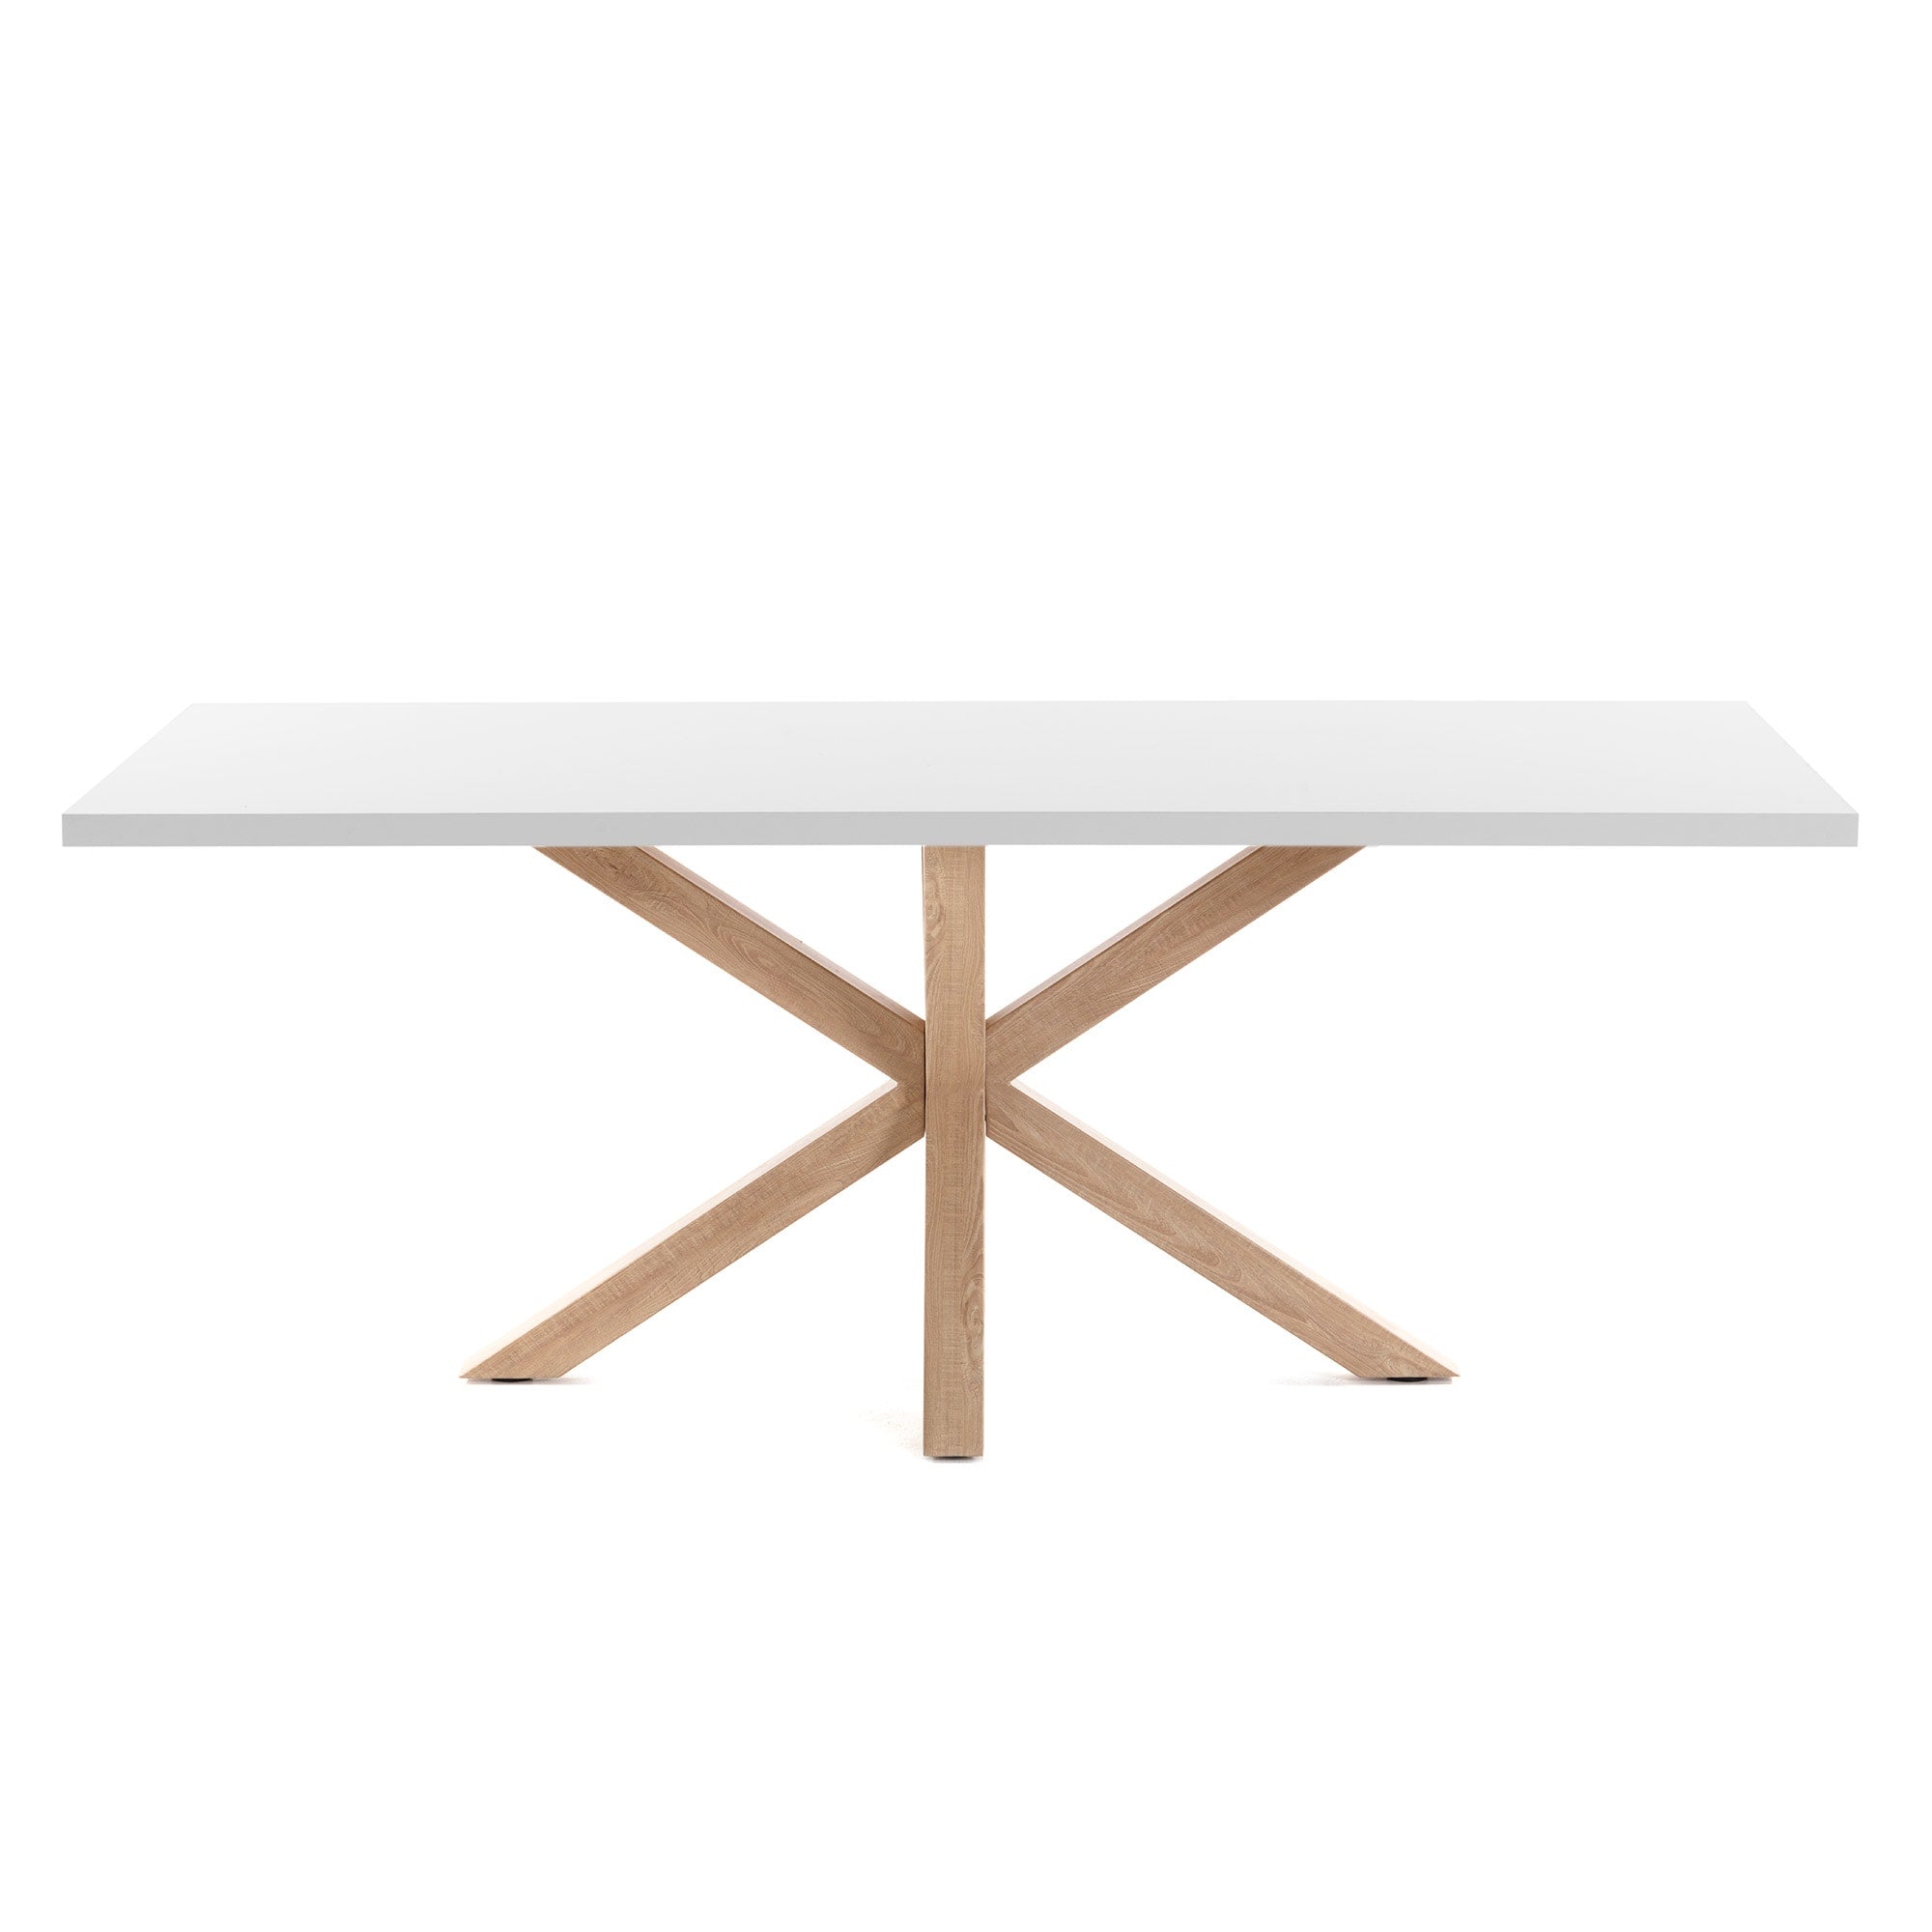 Argo table 180 cm white melamine wood effect legs